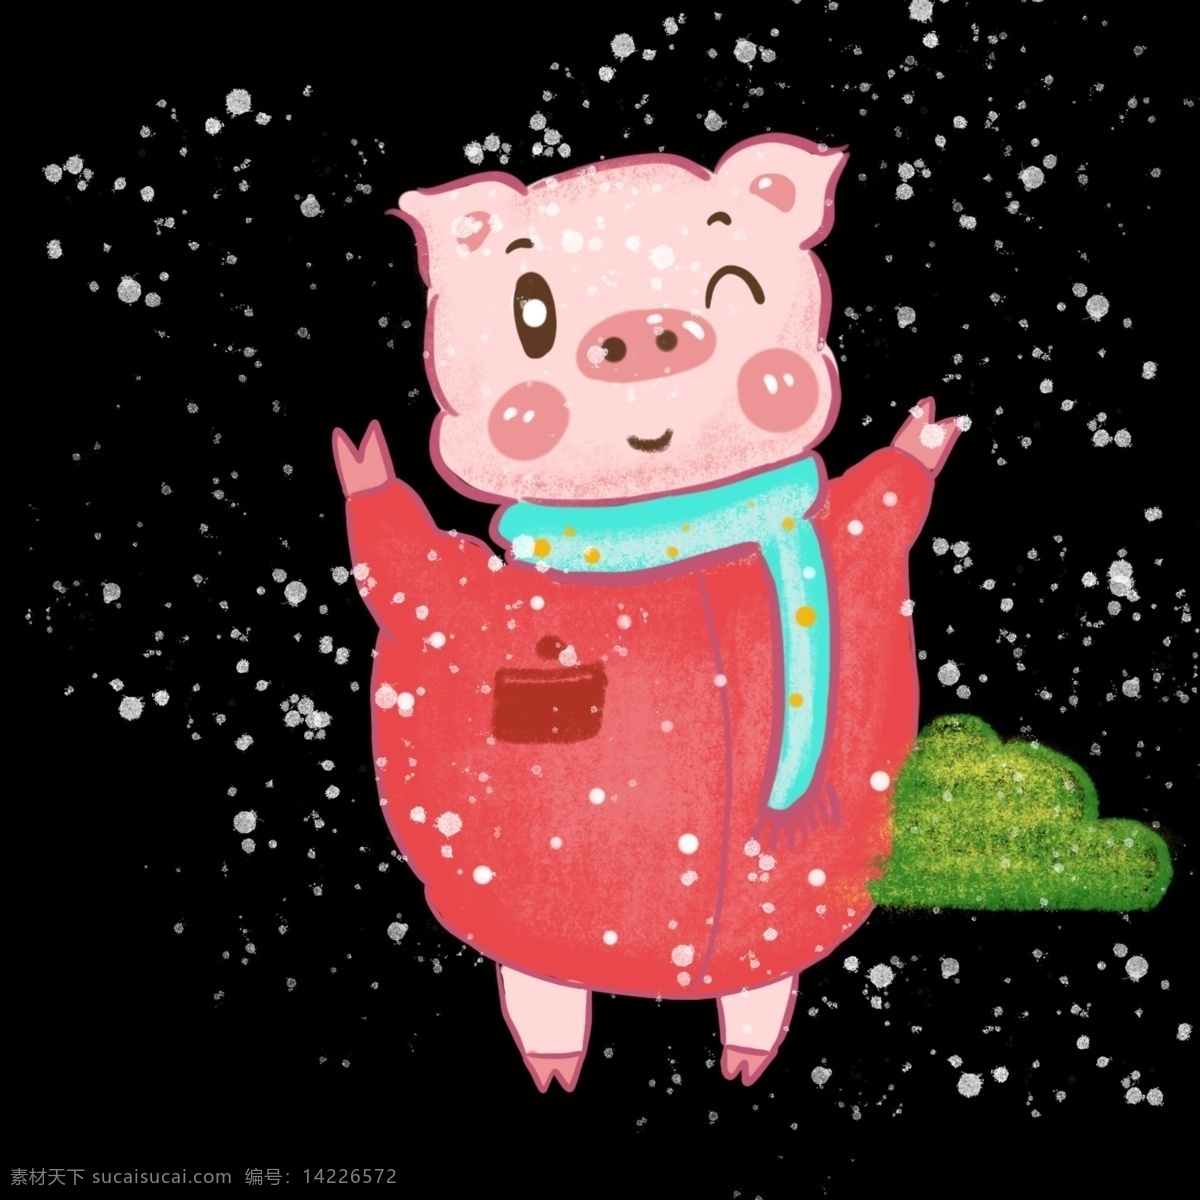 猪年 穿 新衣 服 猪 粉红 色色 手绘 插画 卡通 宝宝 穿新衣服的猪 金币猪 下雪了 卡通猪猪 喜庆的猪 粉色系列 猪宝宝 金猪报福 福到了 可爱的猪猪 雪天